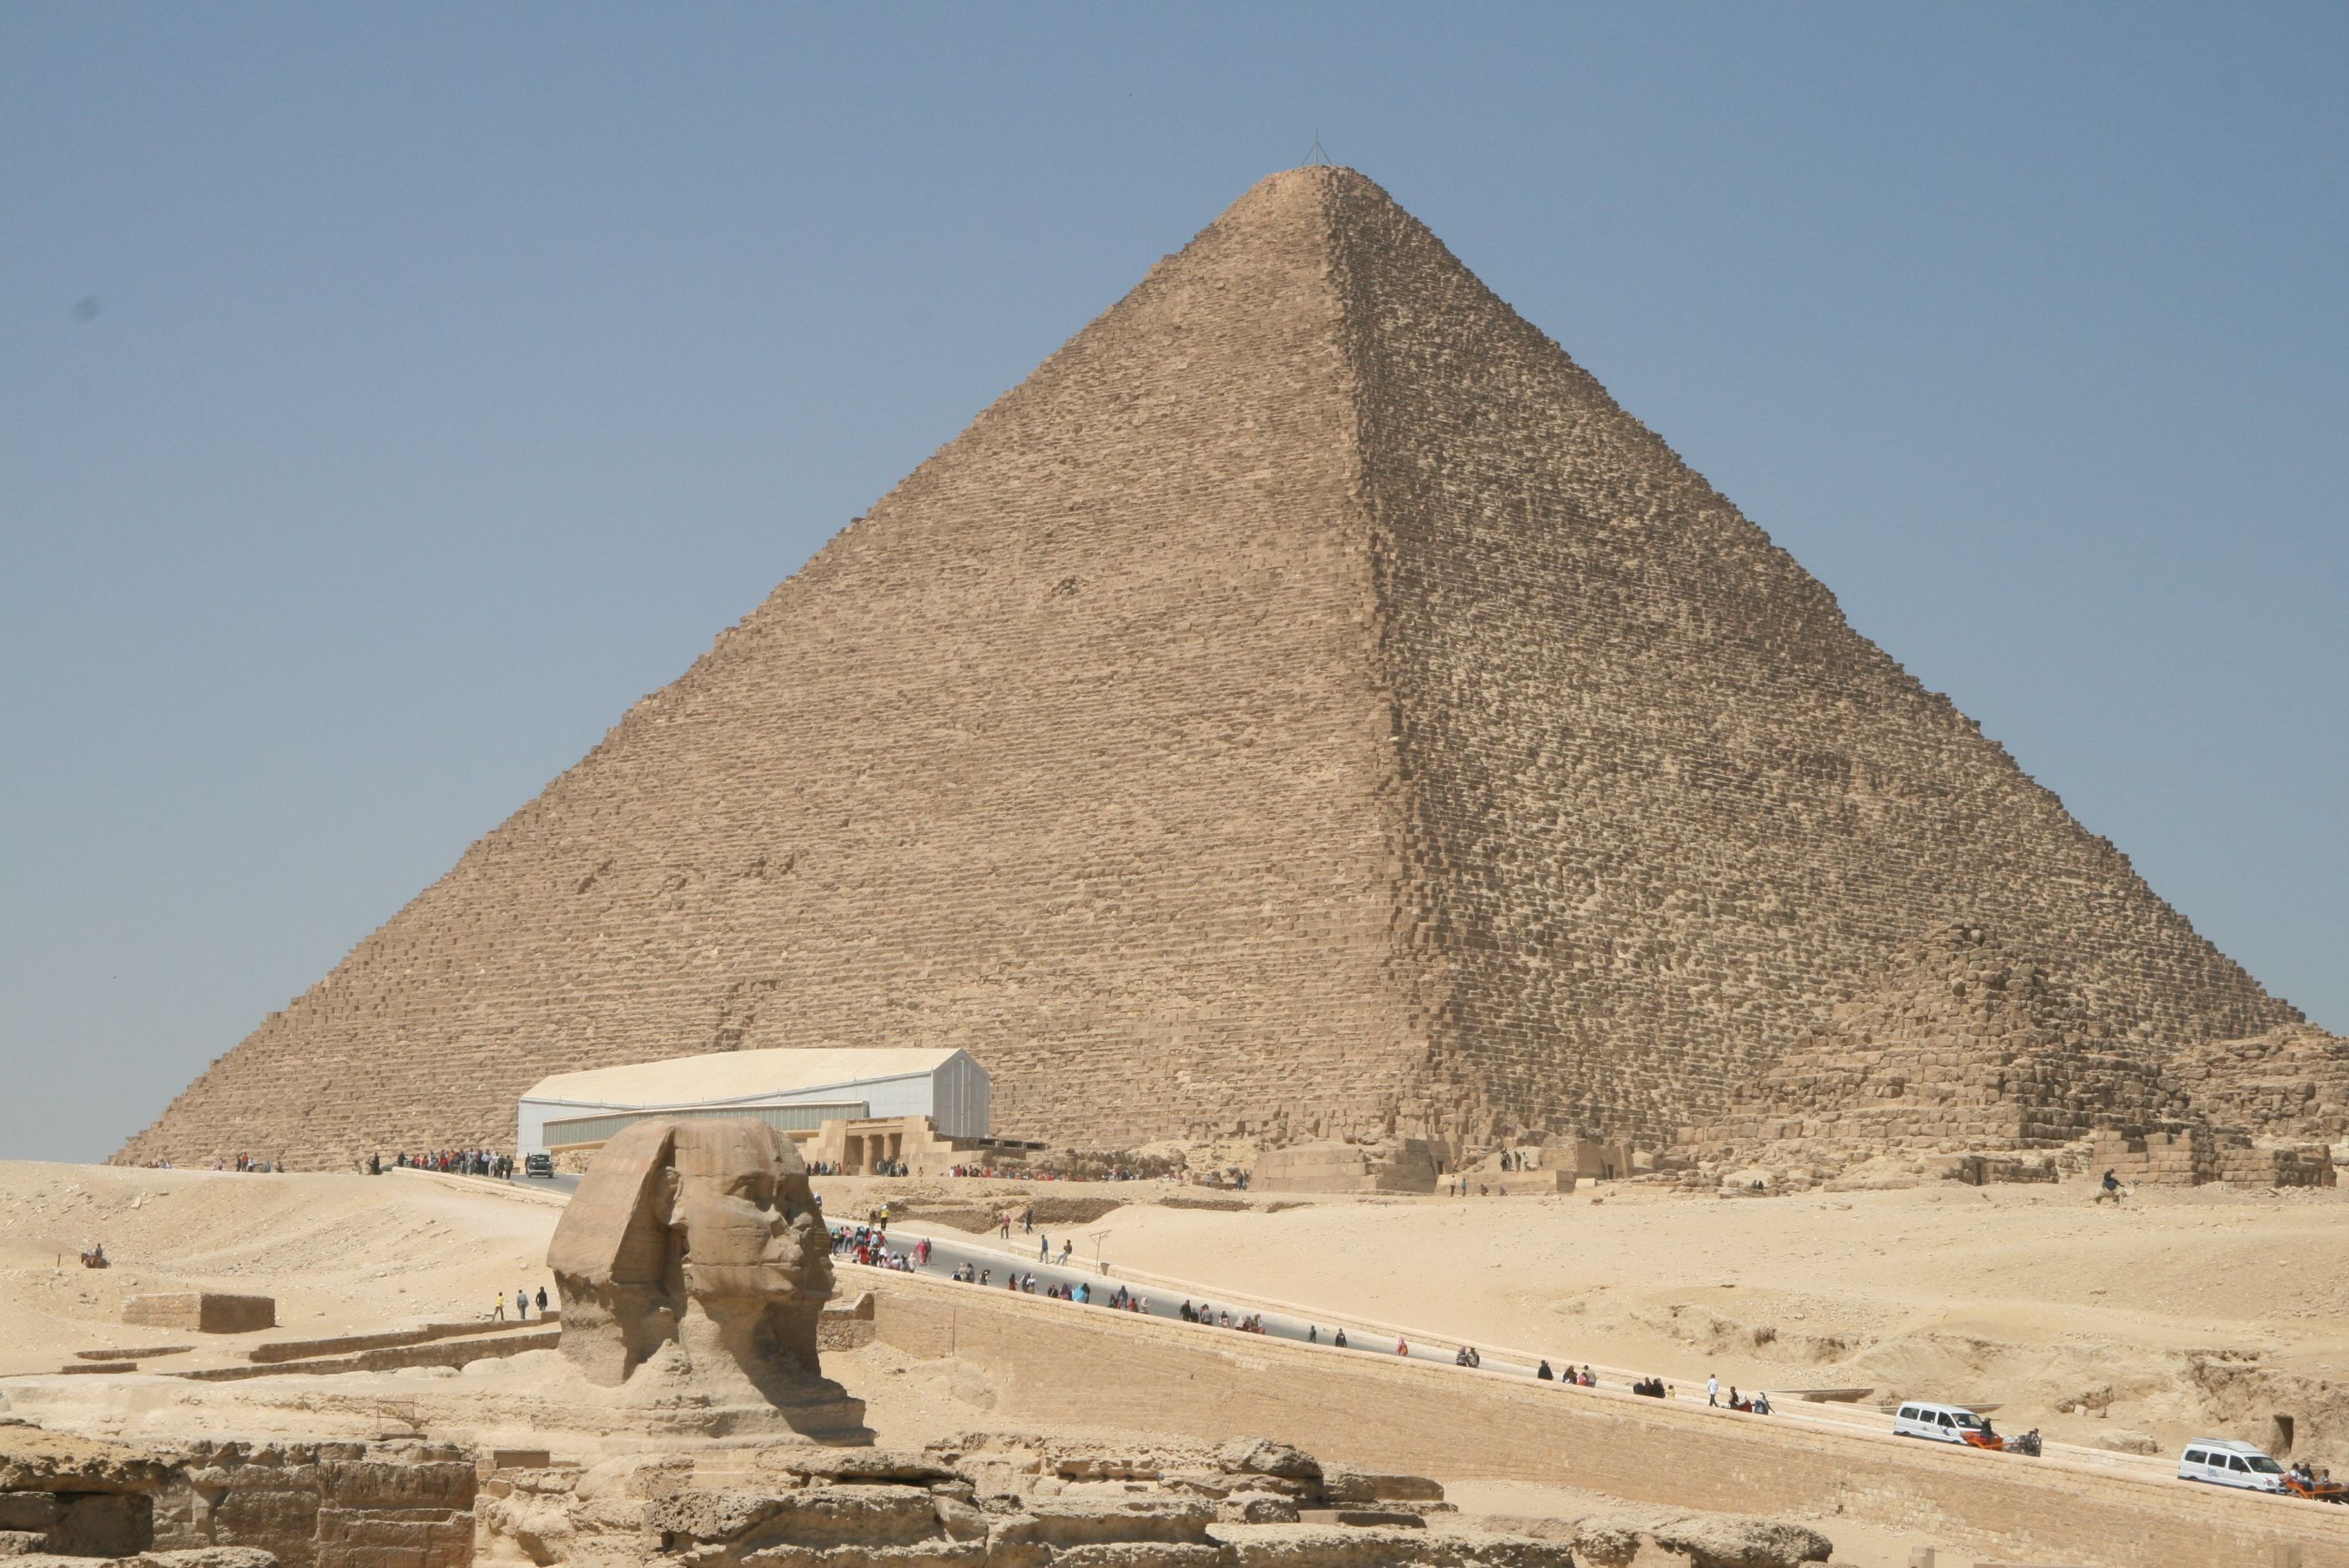 Sehenswürdigkeiten in Ägypten – mein Erfahrungsbericht